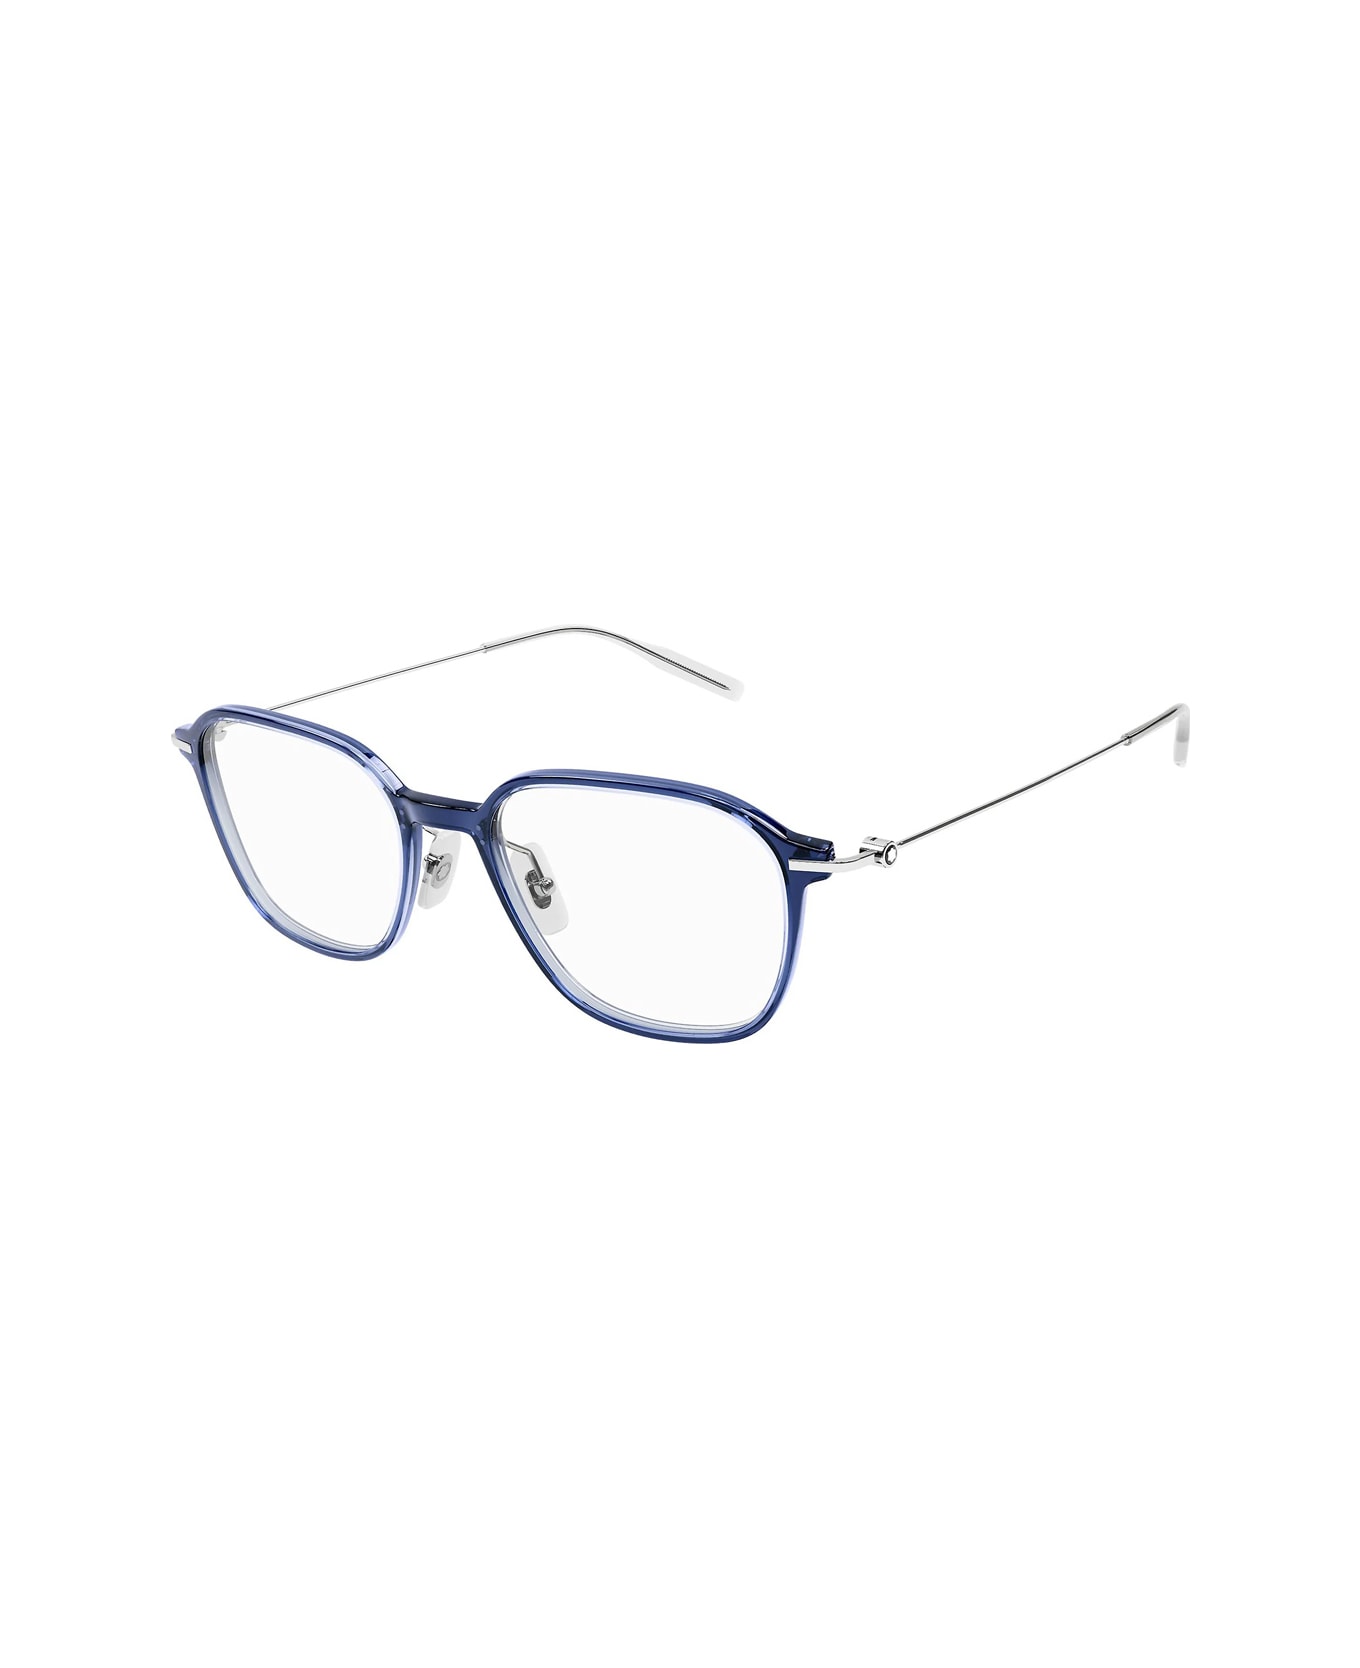 Montblanc Mb0207o Linea Established 003 Glasses - Blu